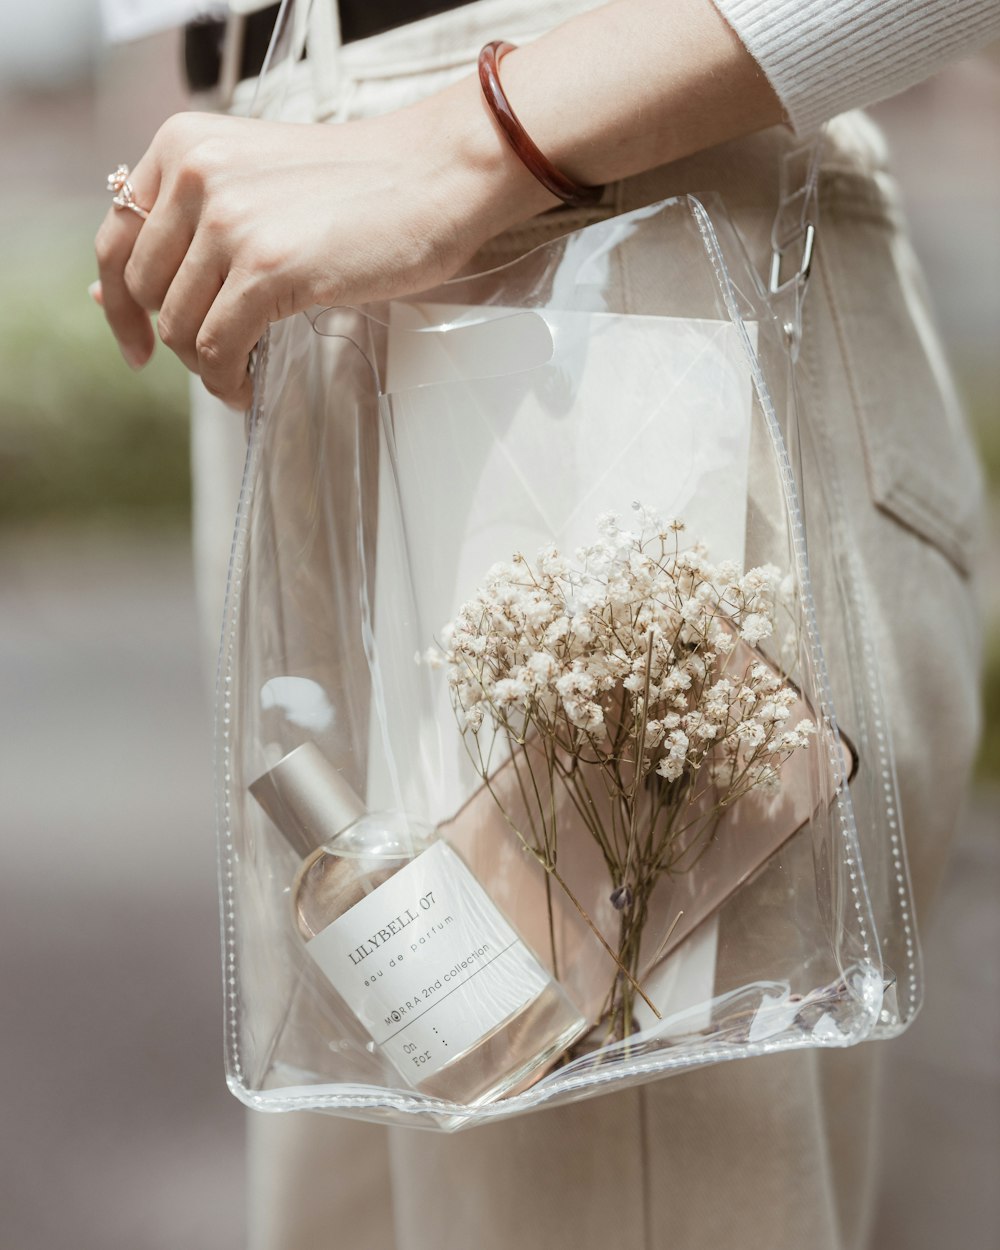 una persona sosteniendo una bolsa transparente con flores en ella